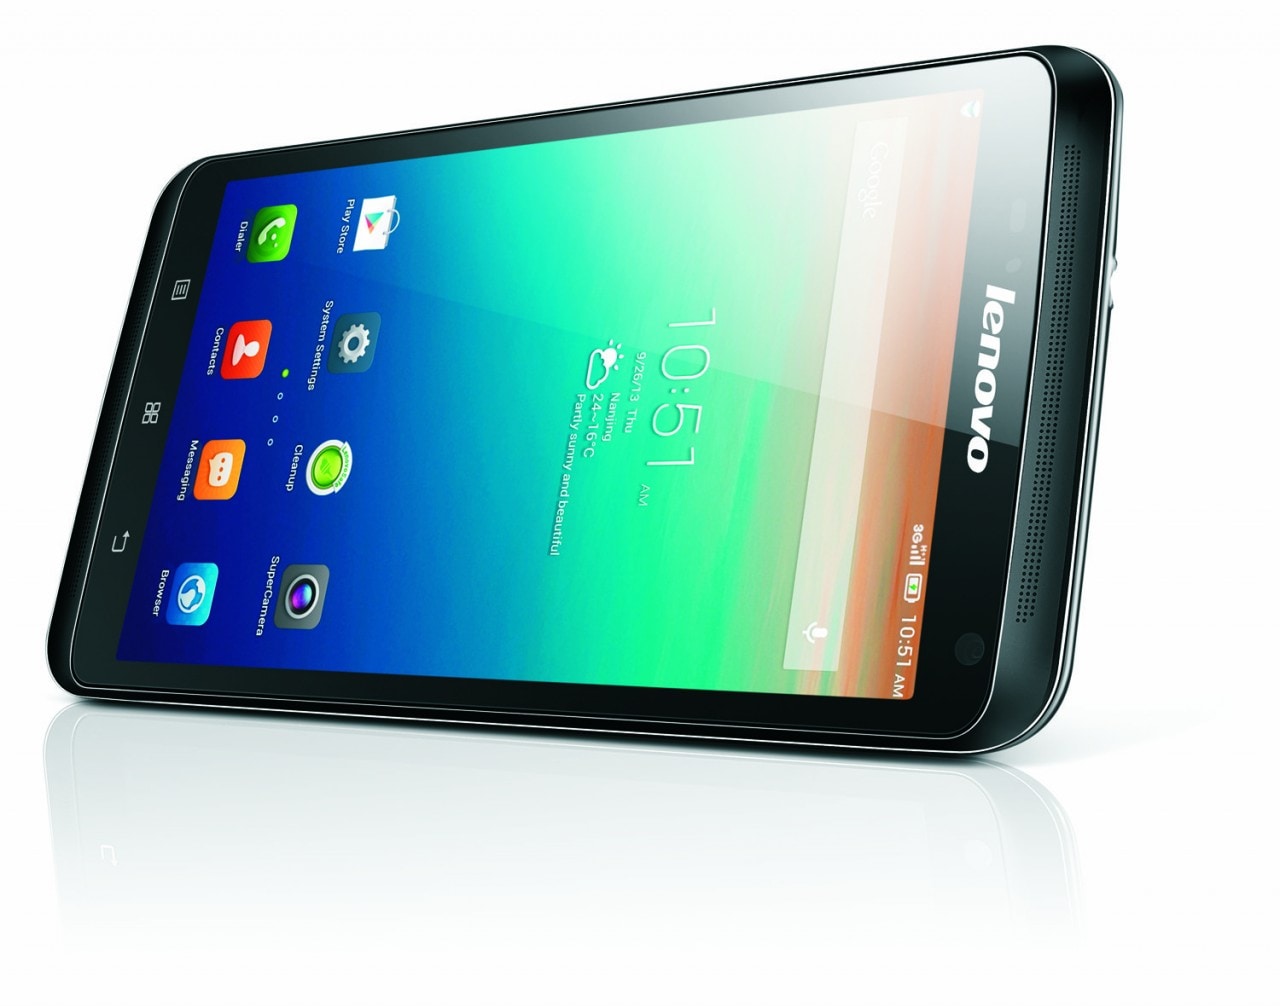 Lenovo S930, S650 y A859 oficiales: tres nuevos teléfonos inteligentes con doble SIM de 6, 5 y 4.7 pulgadas (foto)